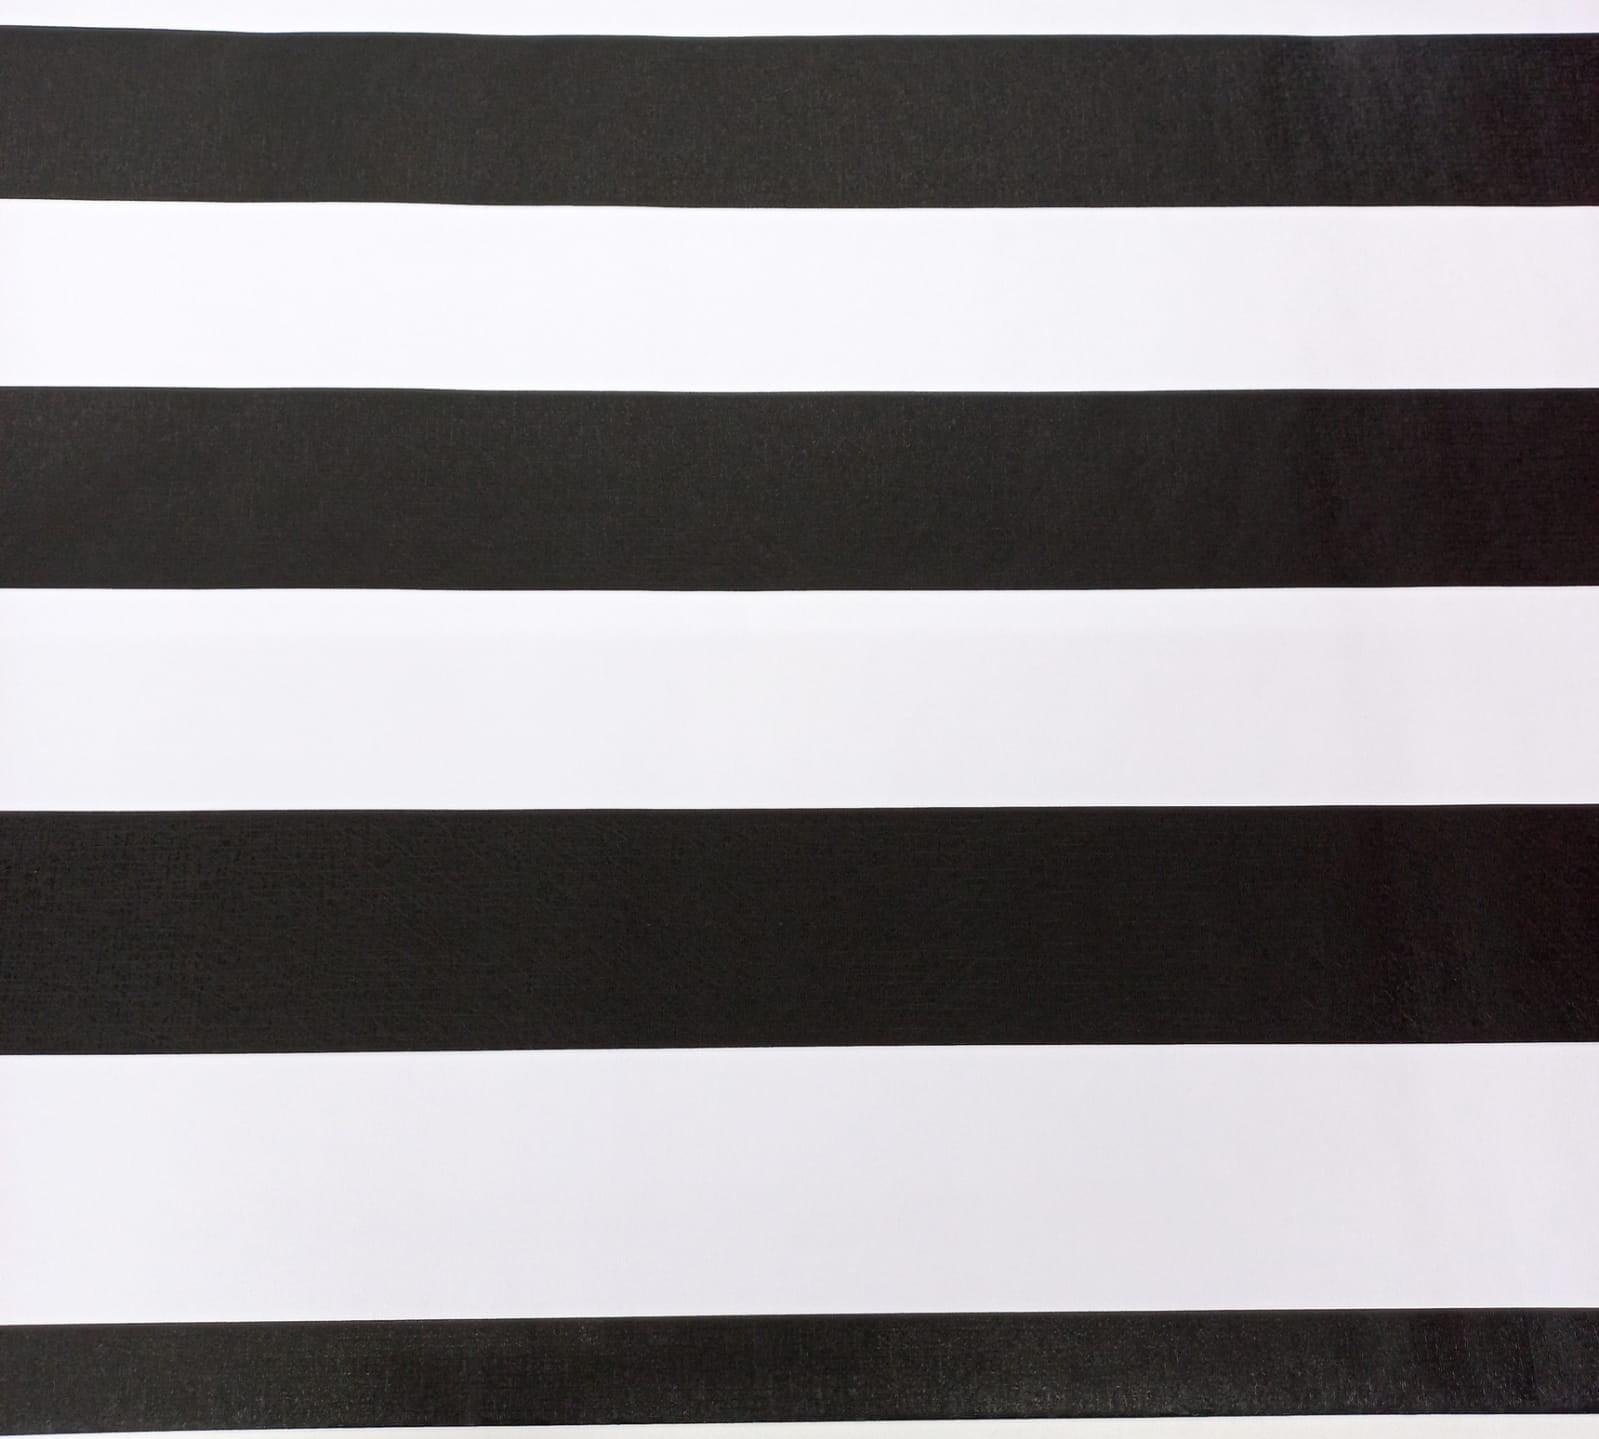 Papel de Parede Listras Preto E Branco 0,45 Cm x 5 Mt